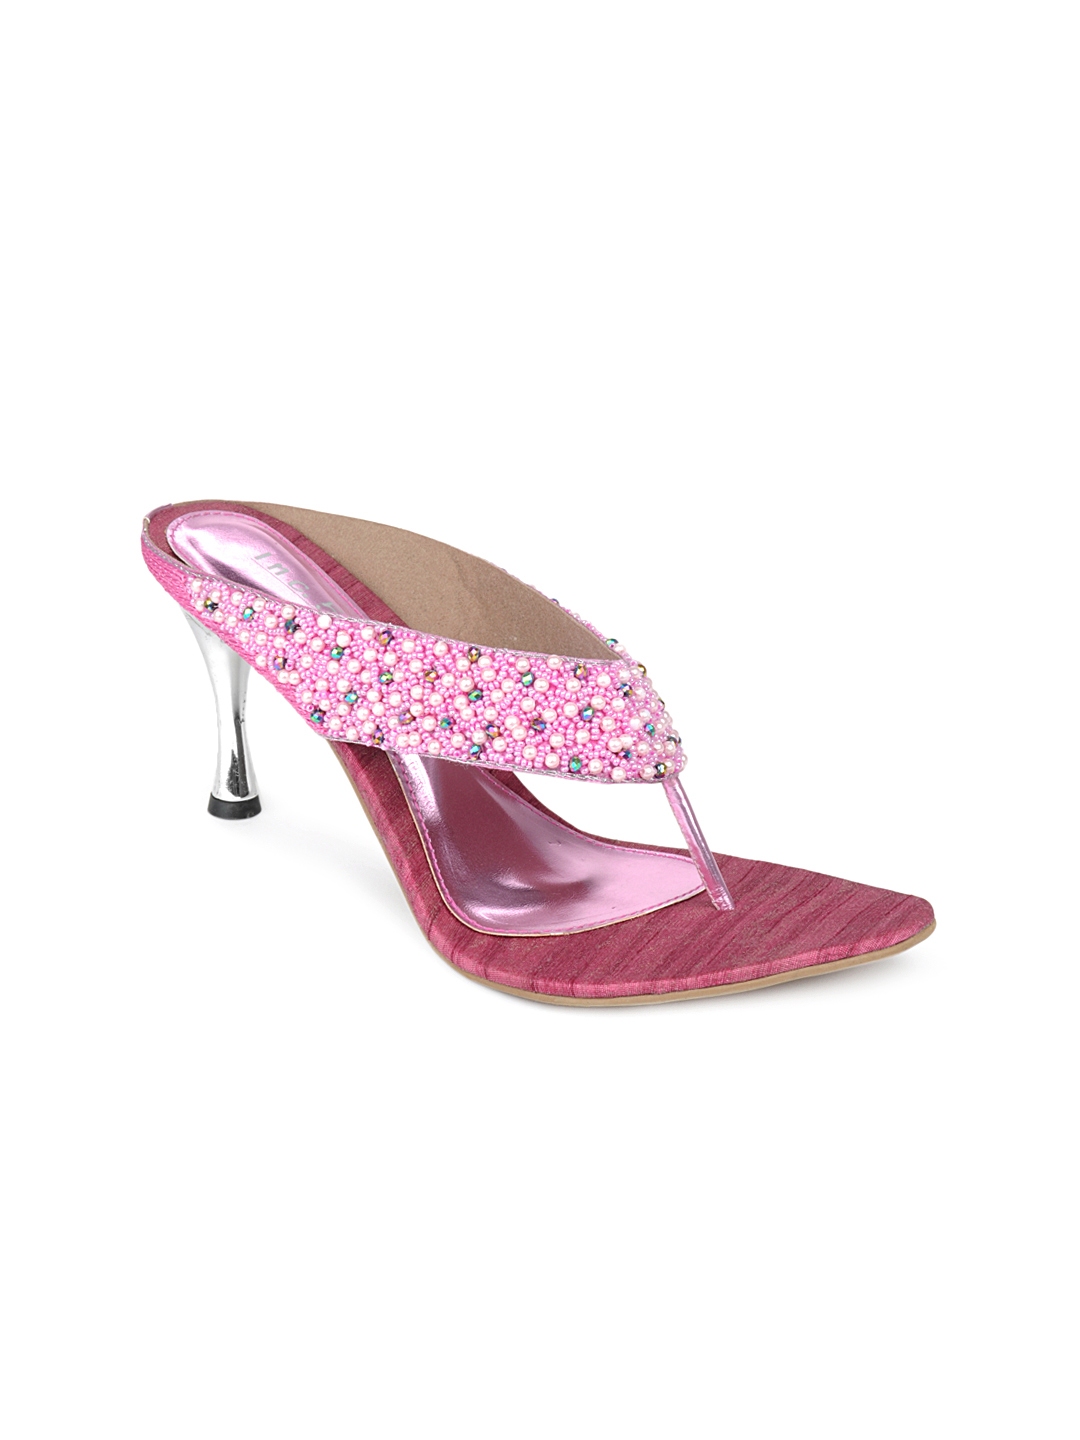 inc pink heels